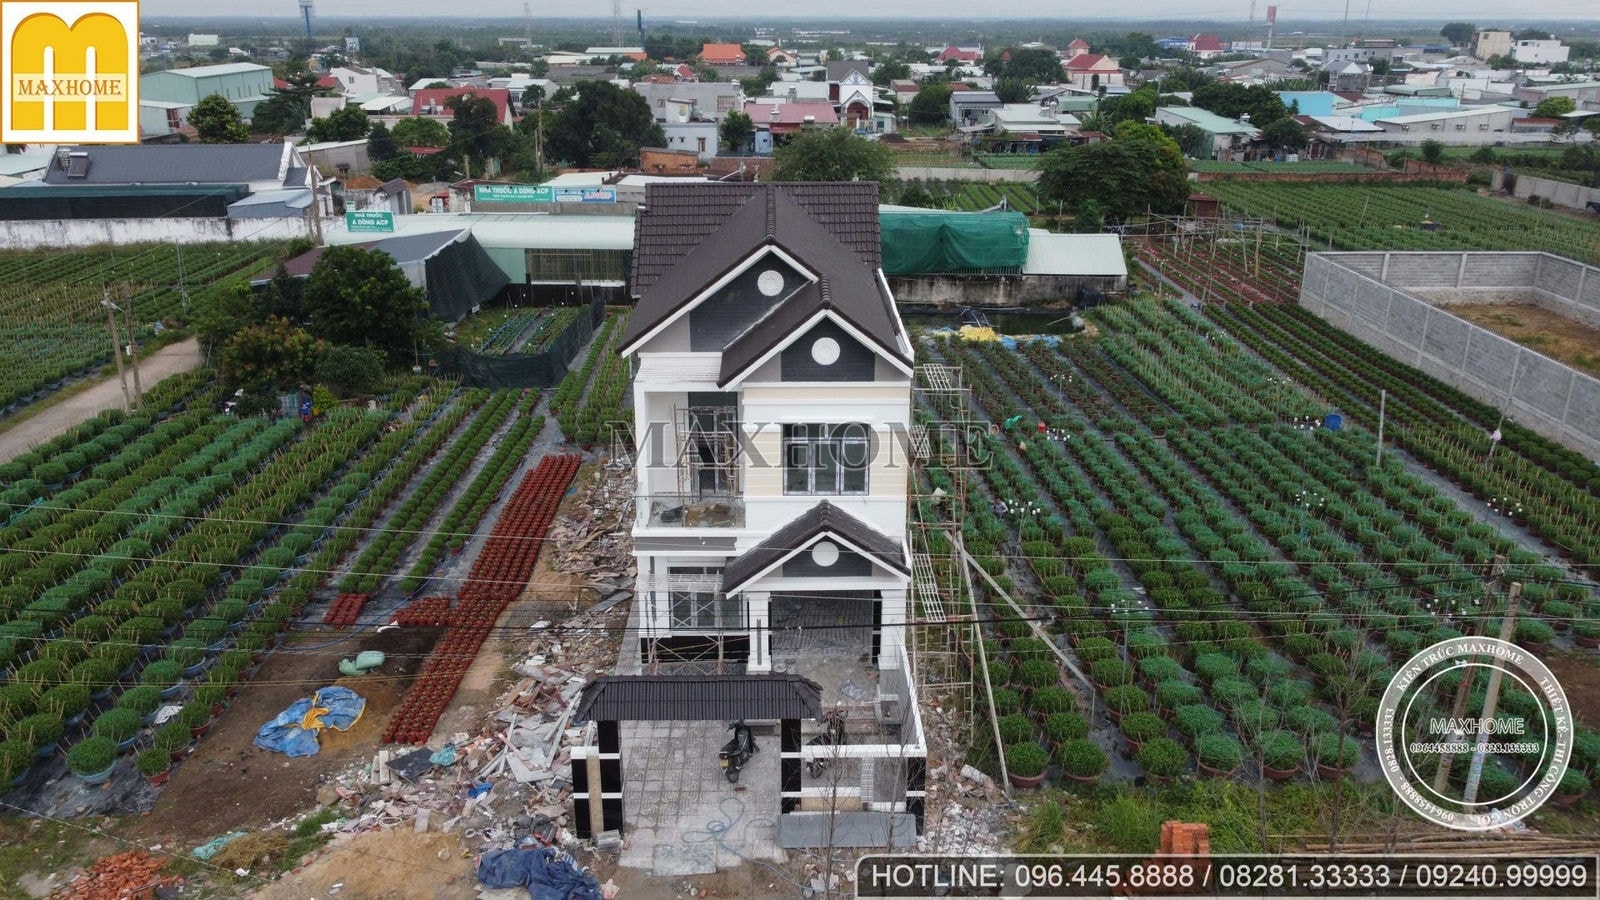 Khảo sát công trình nhà 2 tầng mái Thái hoàn thiện 90% tại Vũng Tàu